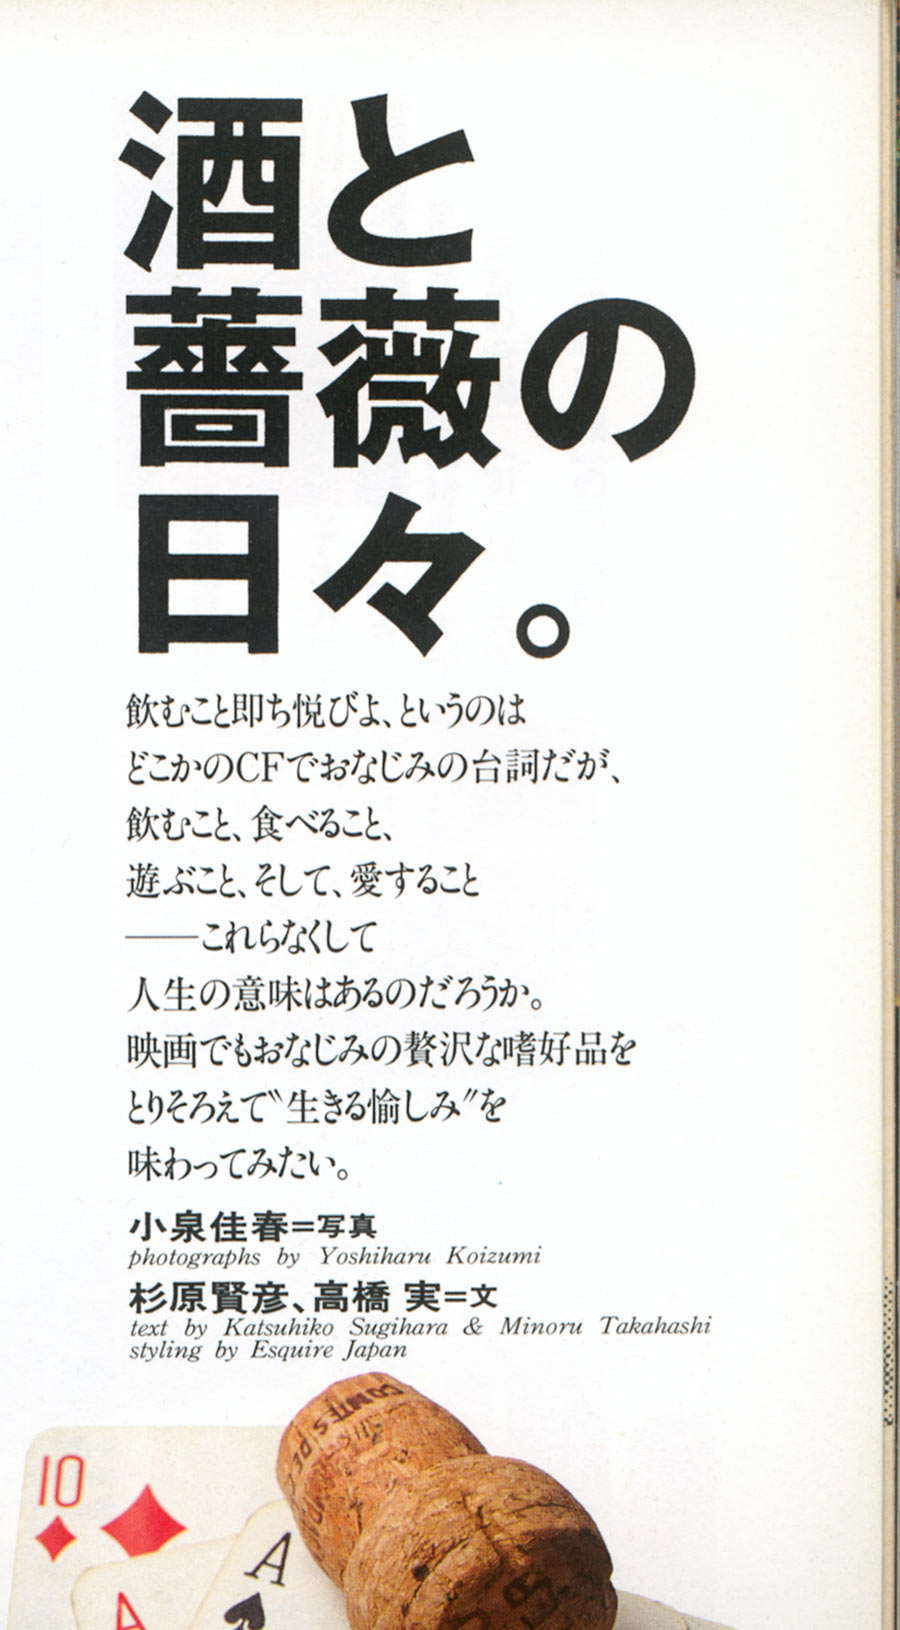 Japanische Typografie: Headline und Teaser einer Zeitschrift